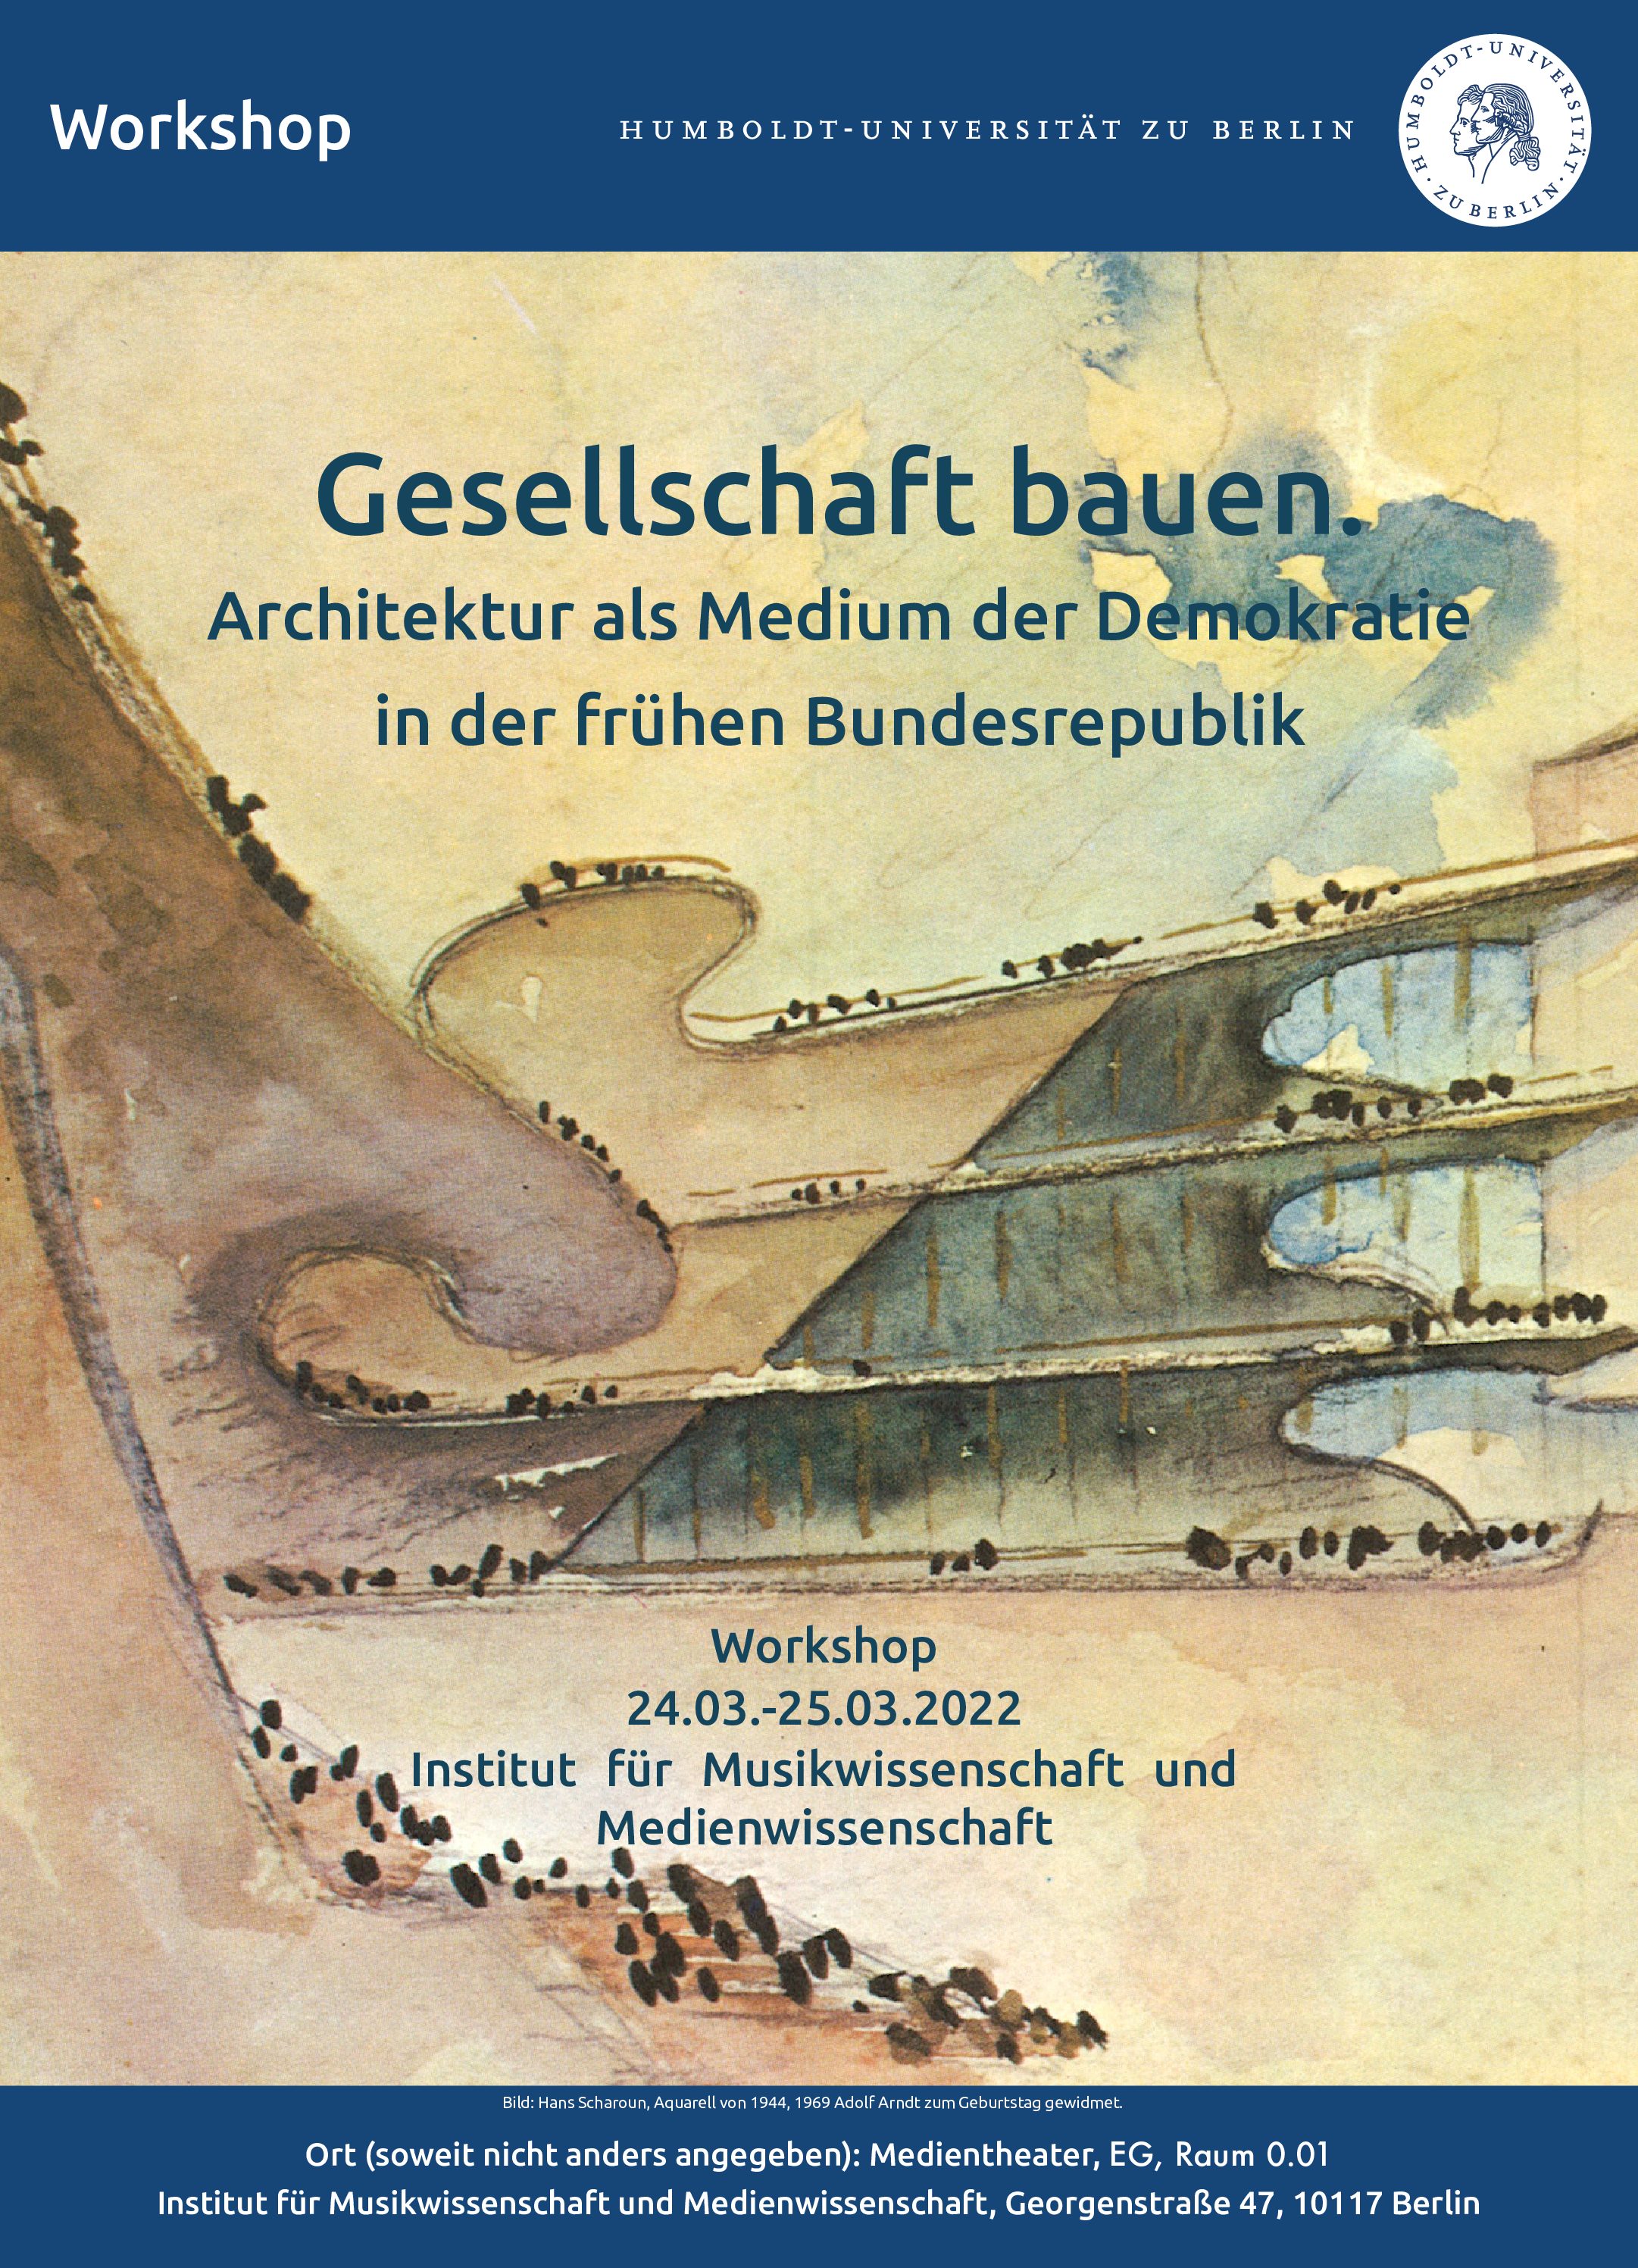 Workshop: Gesellschaft bauen. Architektur als Medium der Demokratie in der frühen Bundesrepublik